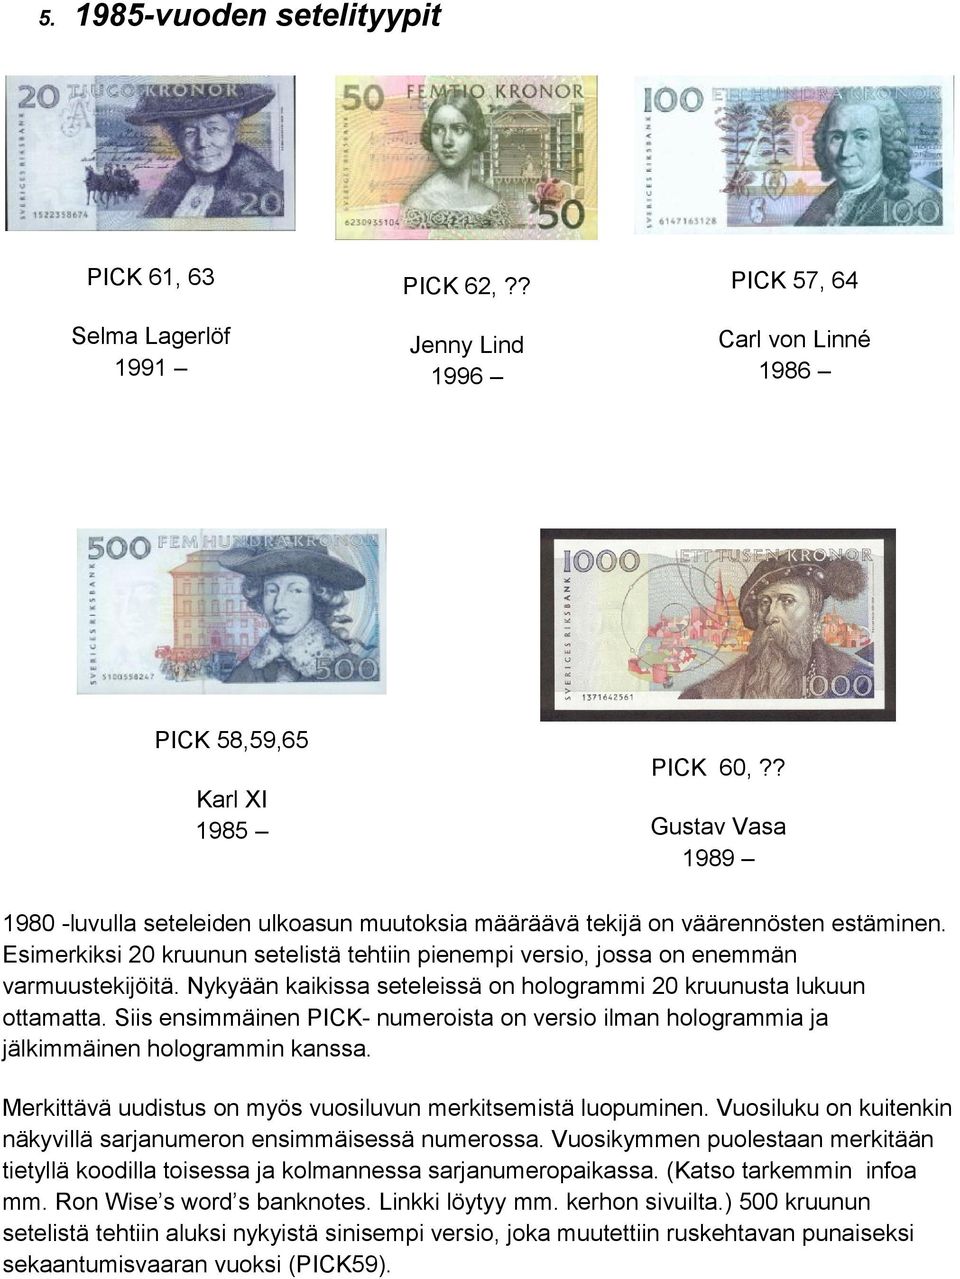 Nykyään kaikissa seteleissä on hologrammi 20 kruunusta lukuun ottamatta. Siis ensimmäinen PICK- numeroista on versio ilman hologrammia ja jälkimmäinen hologrammin kanssa.